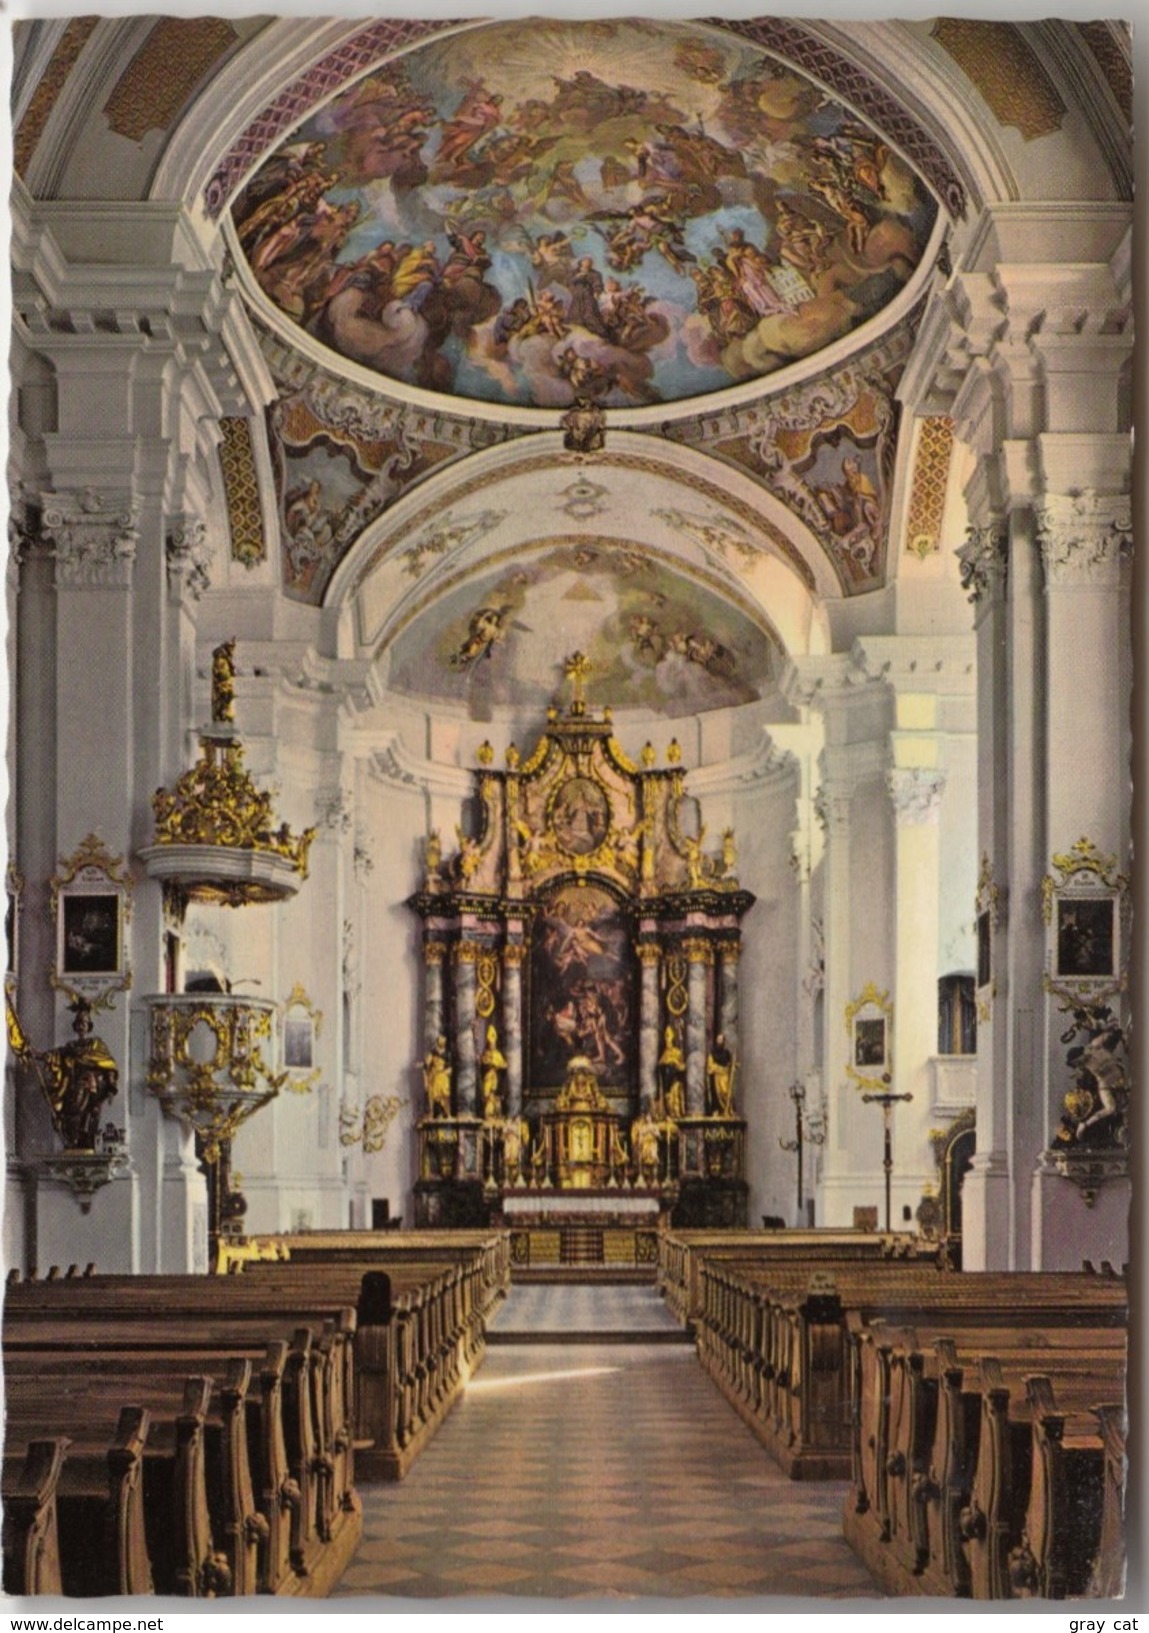 Pfarrkirche Matrei I. Osttirol, Unused Postcard [19709] - Matrei In Osttirol